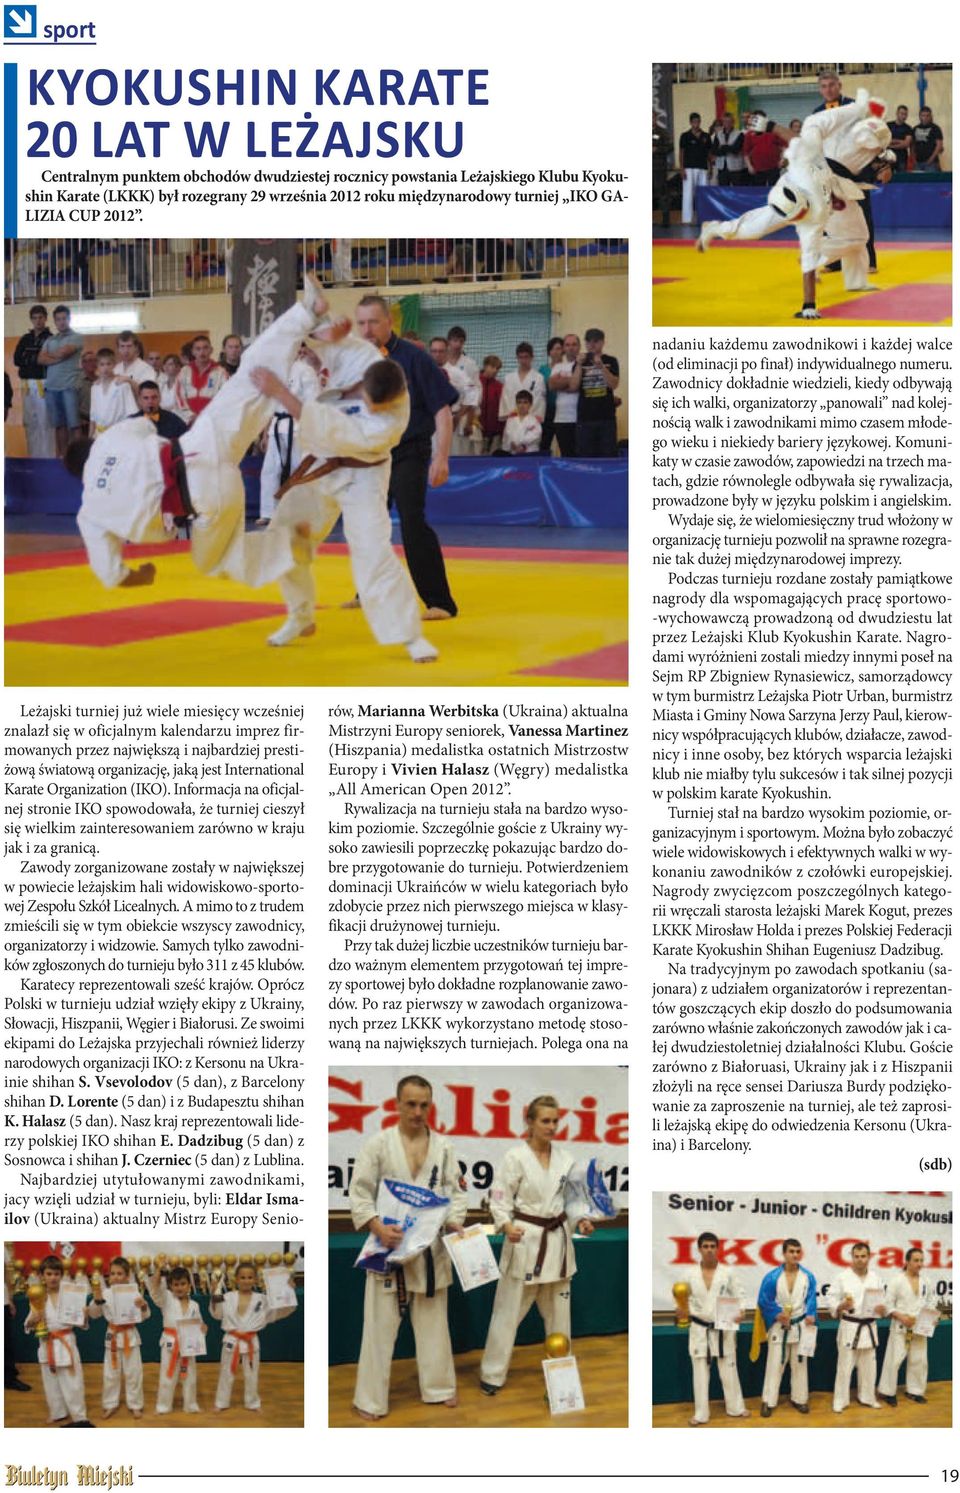 Leżajski turniej już wiele miesięcy wcześniej znalazł się w oficjalnym kalendarzu imprez firmowanych przez największą i najbardziej prestiżową światową organizację, jaką jest International Karate